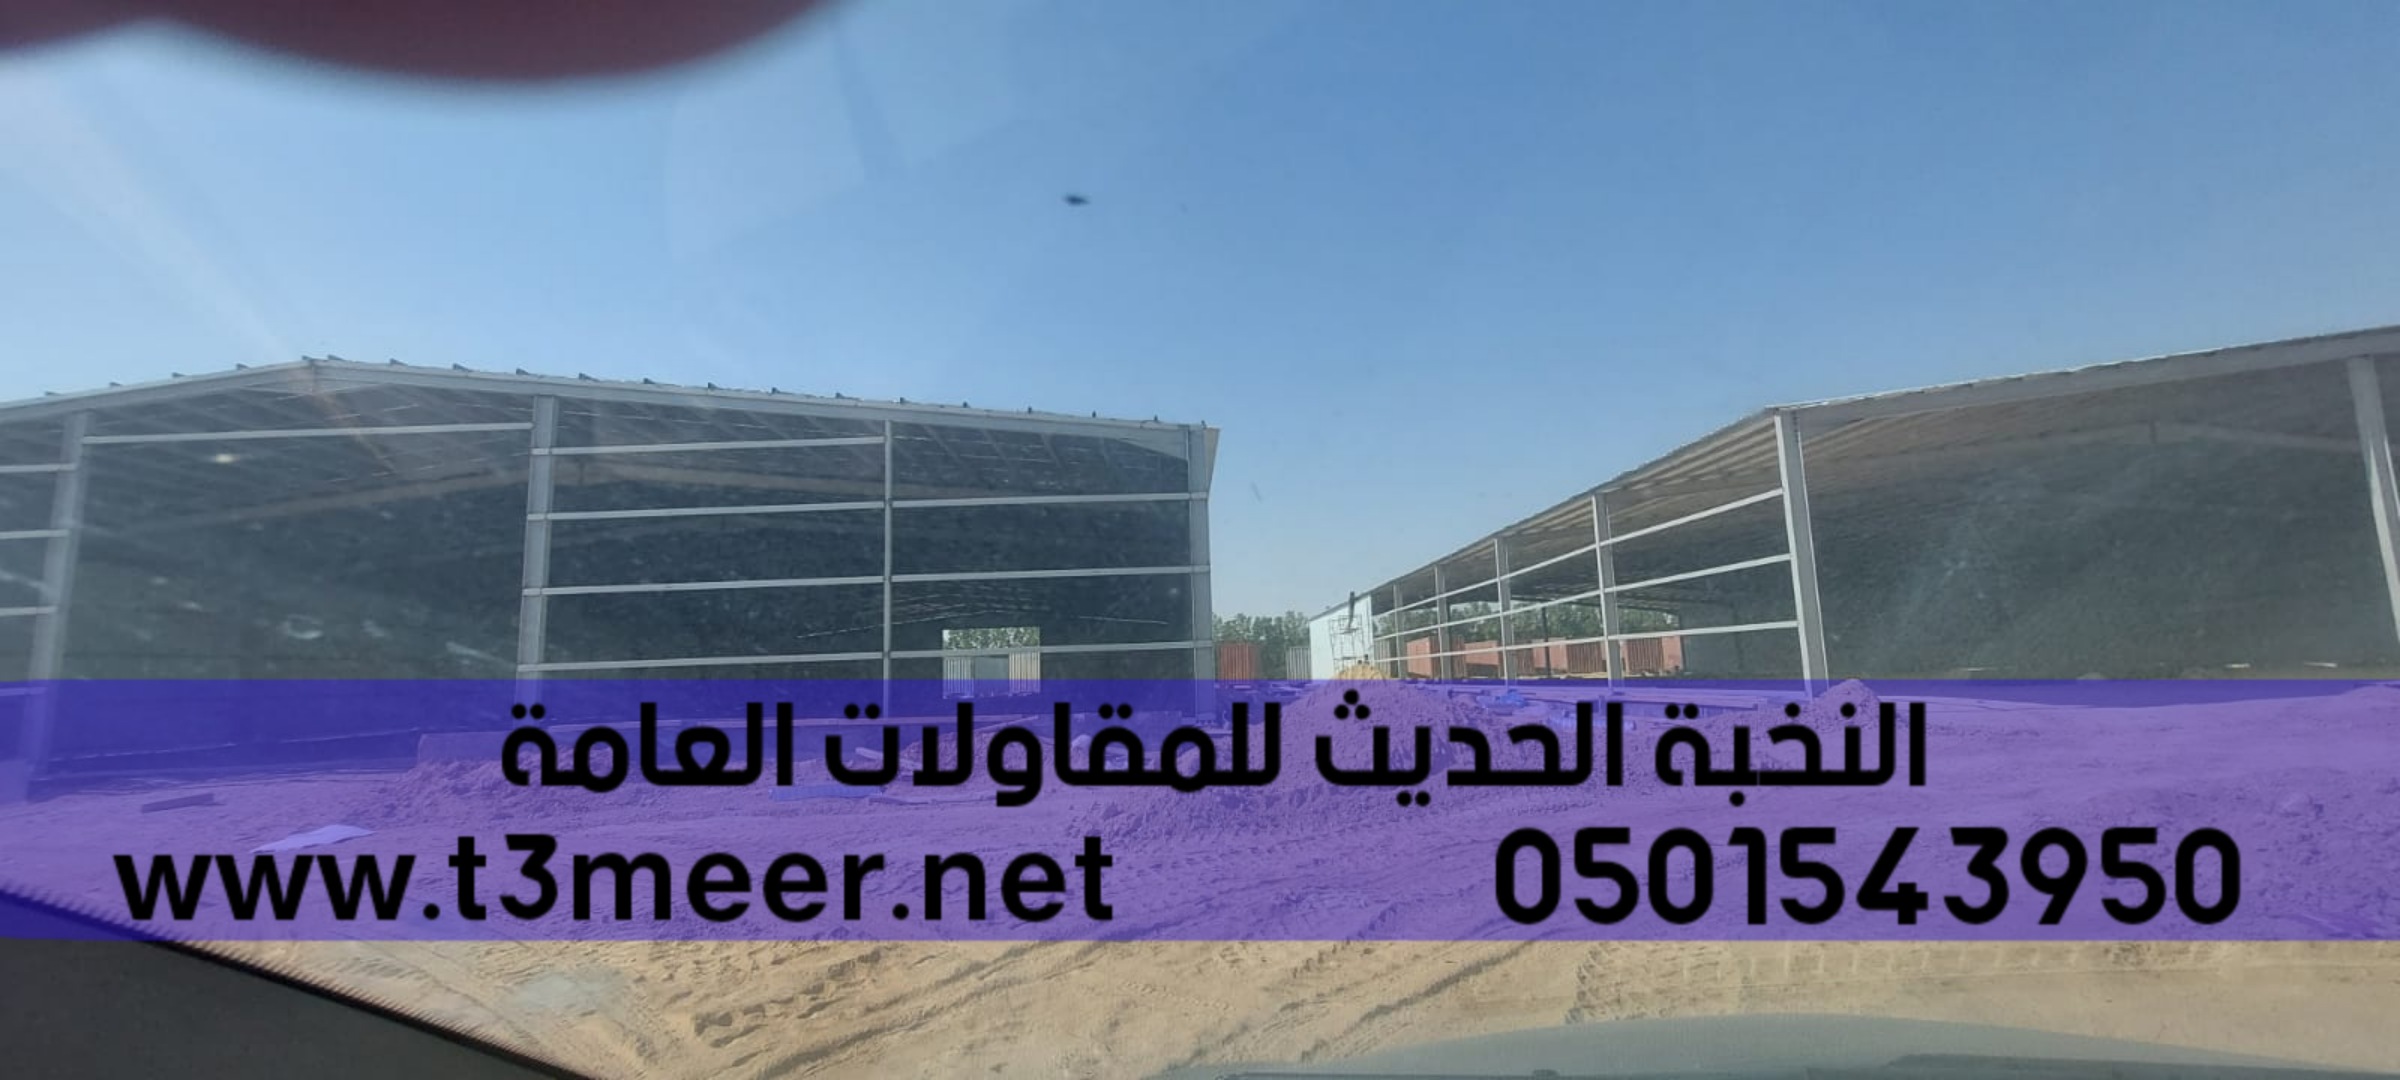 مقاول سندويج بنل في جدة, 0501543950  P_2580rxron1